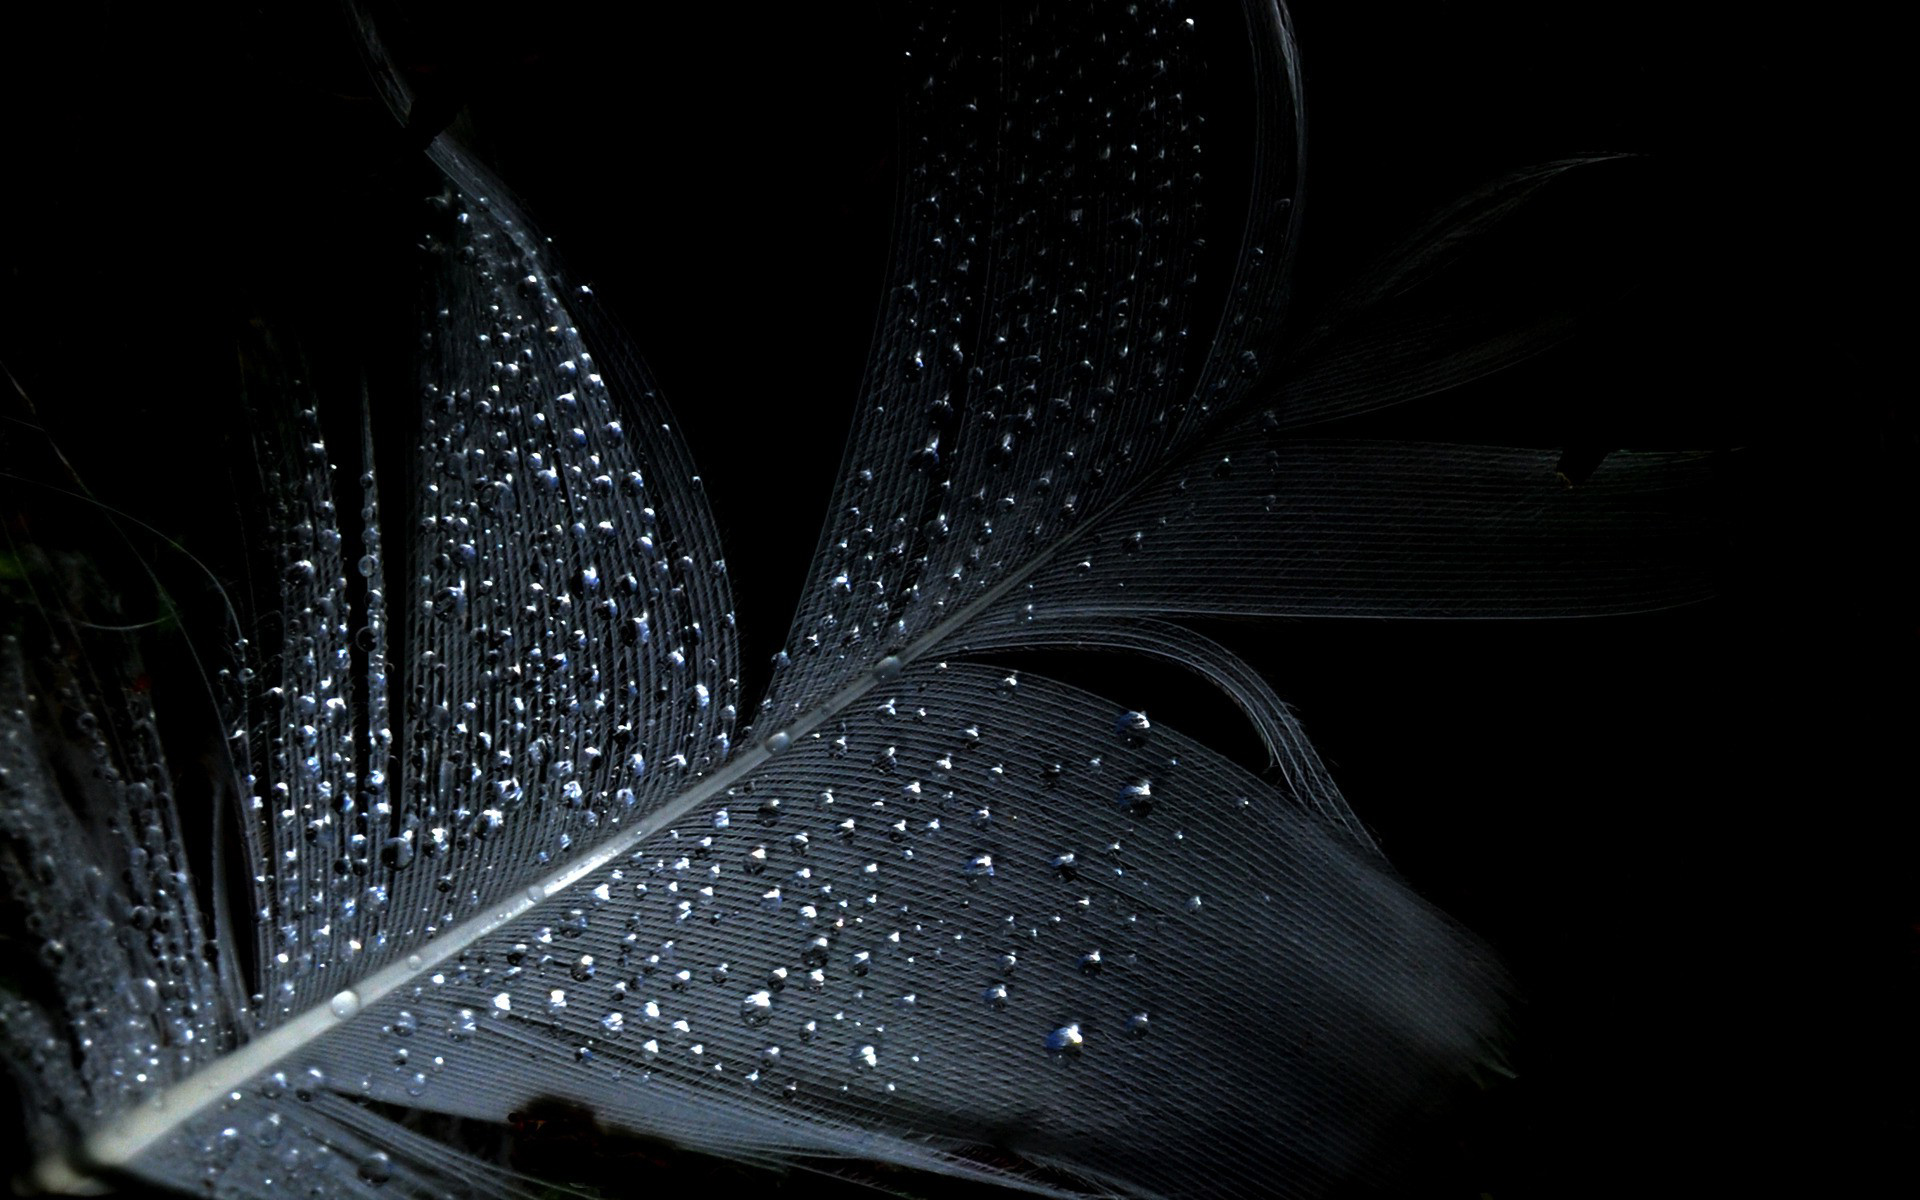 mejor negro fondos de pantalla hd,negro,agua,oscuridad,en blanco y negro,fotografía monocroma